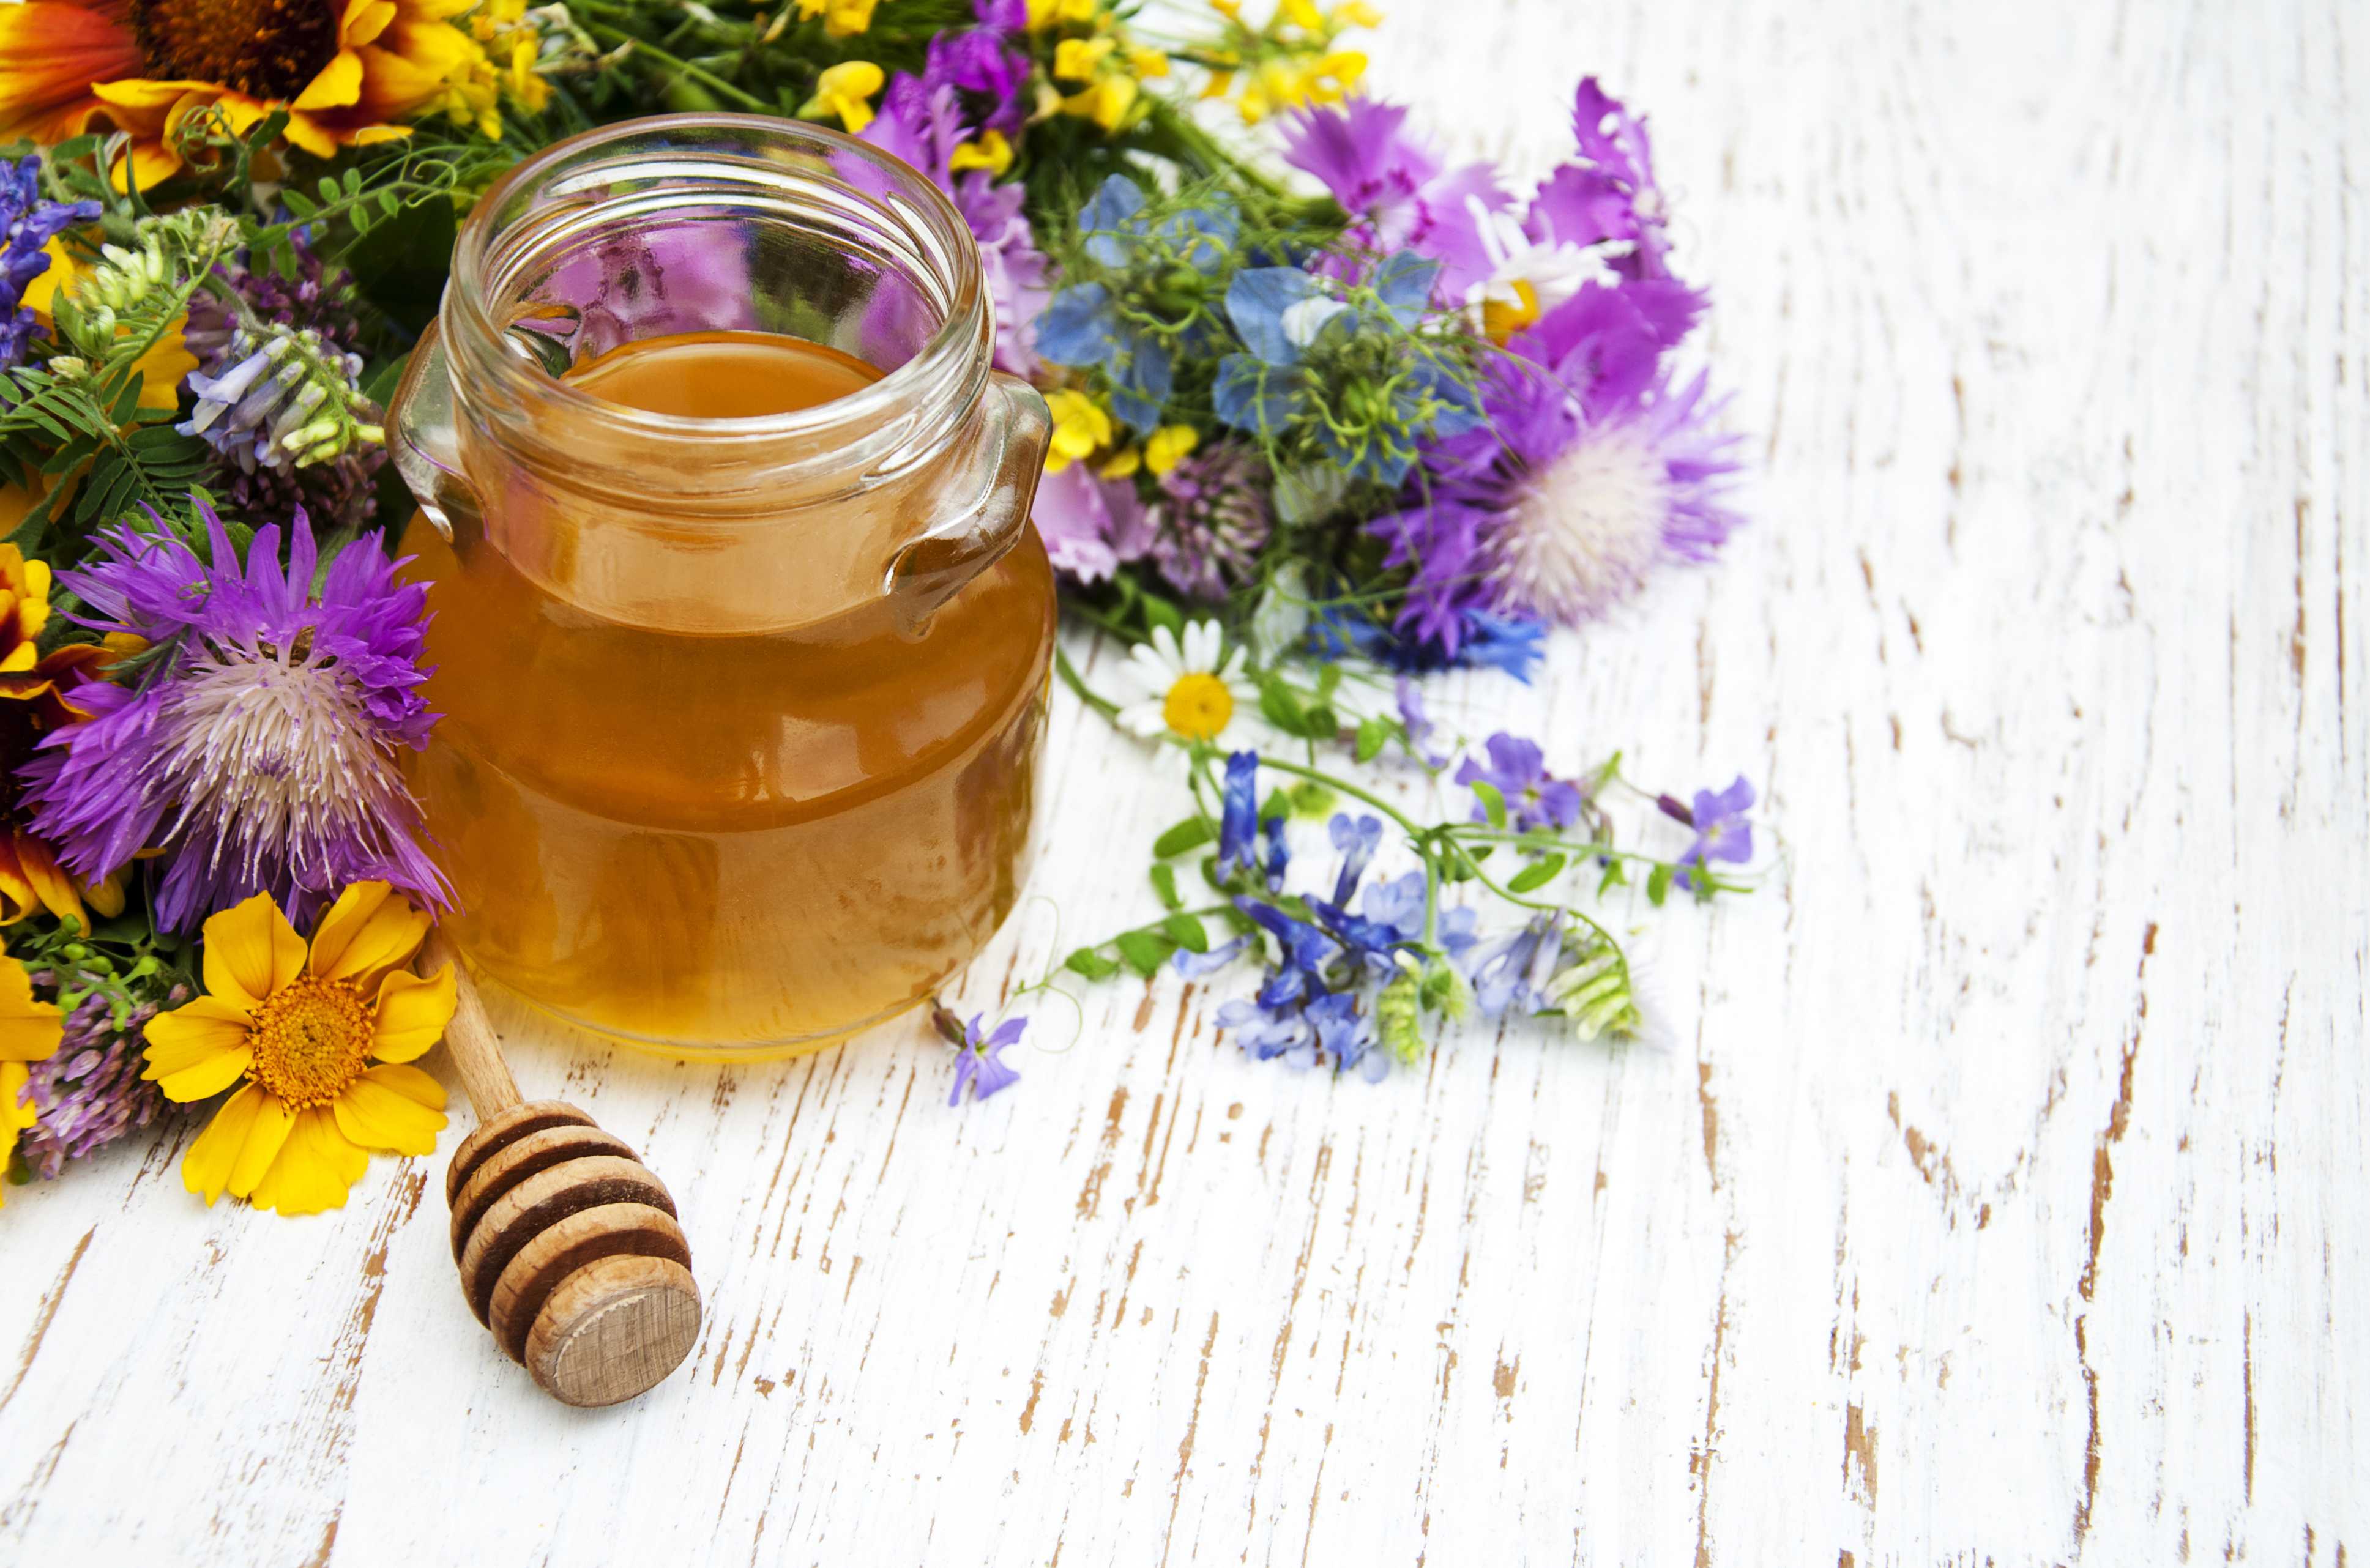 Miels rares de 3Bee, non seulement le miel de manuka mais aussi le miel biologique de tilleul, de toutes fleurs, d'ailanthus et de miellat